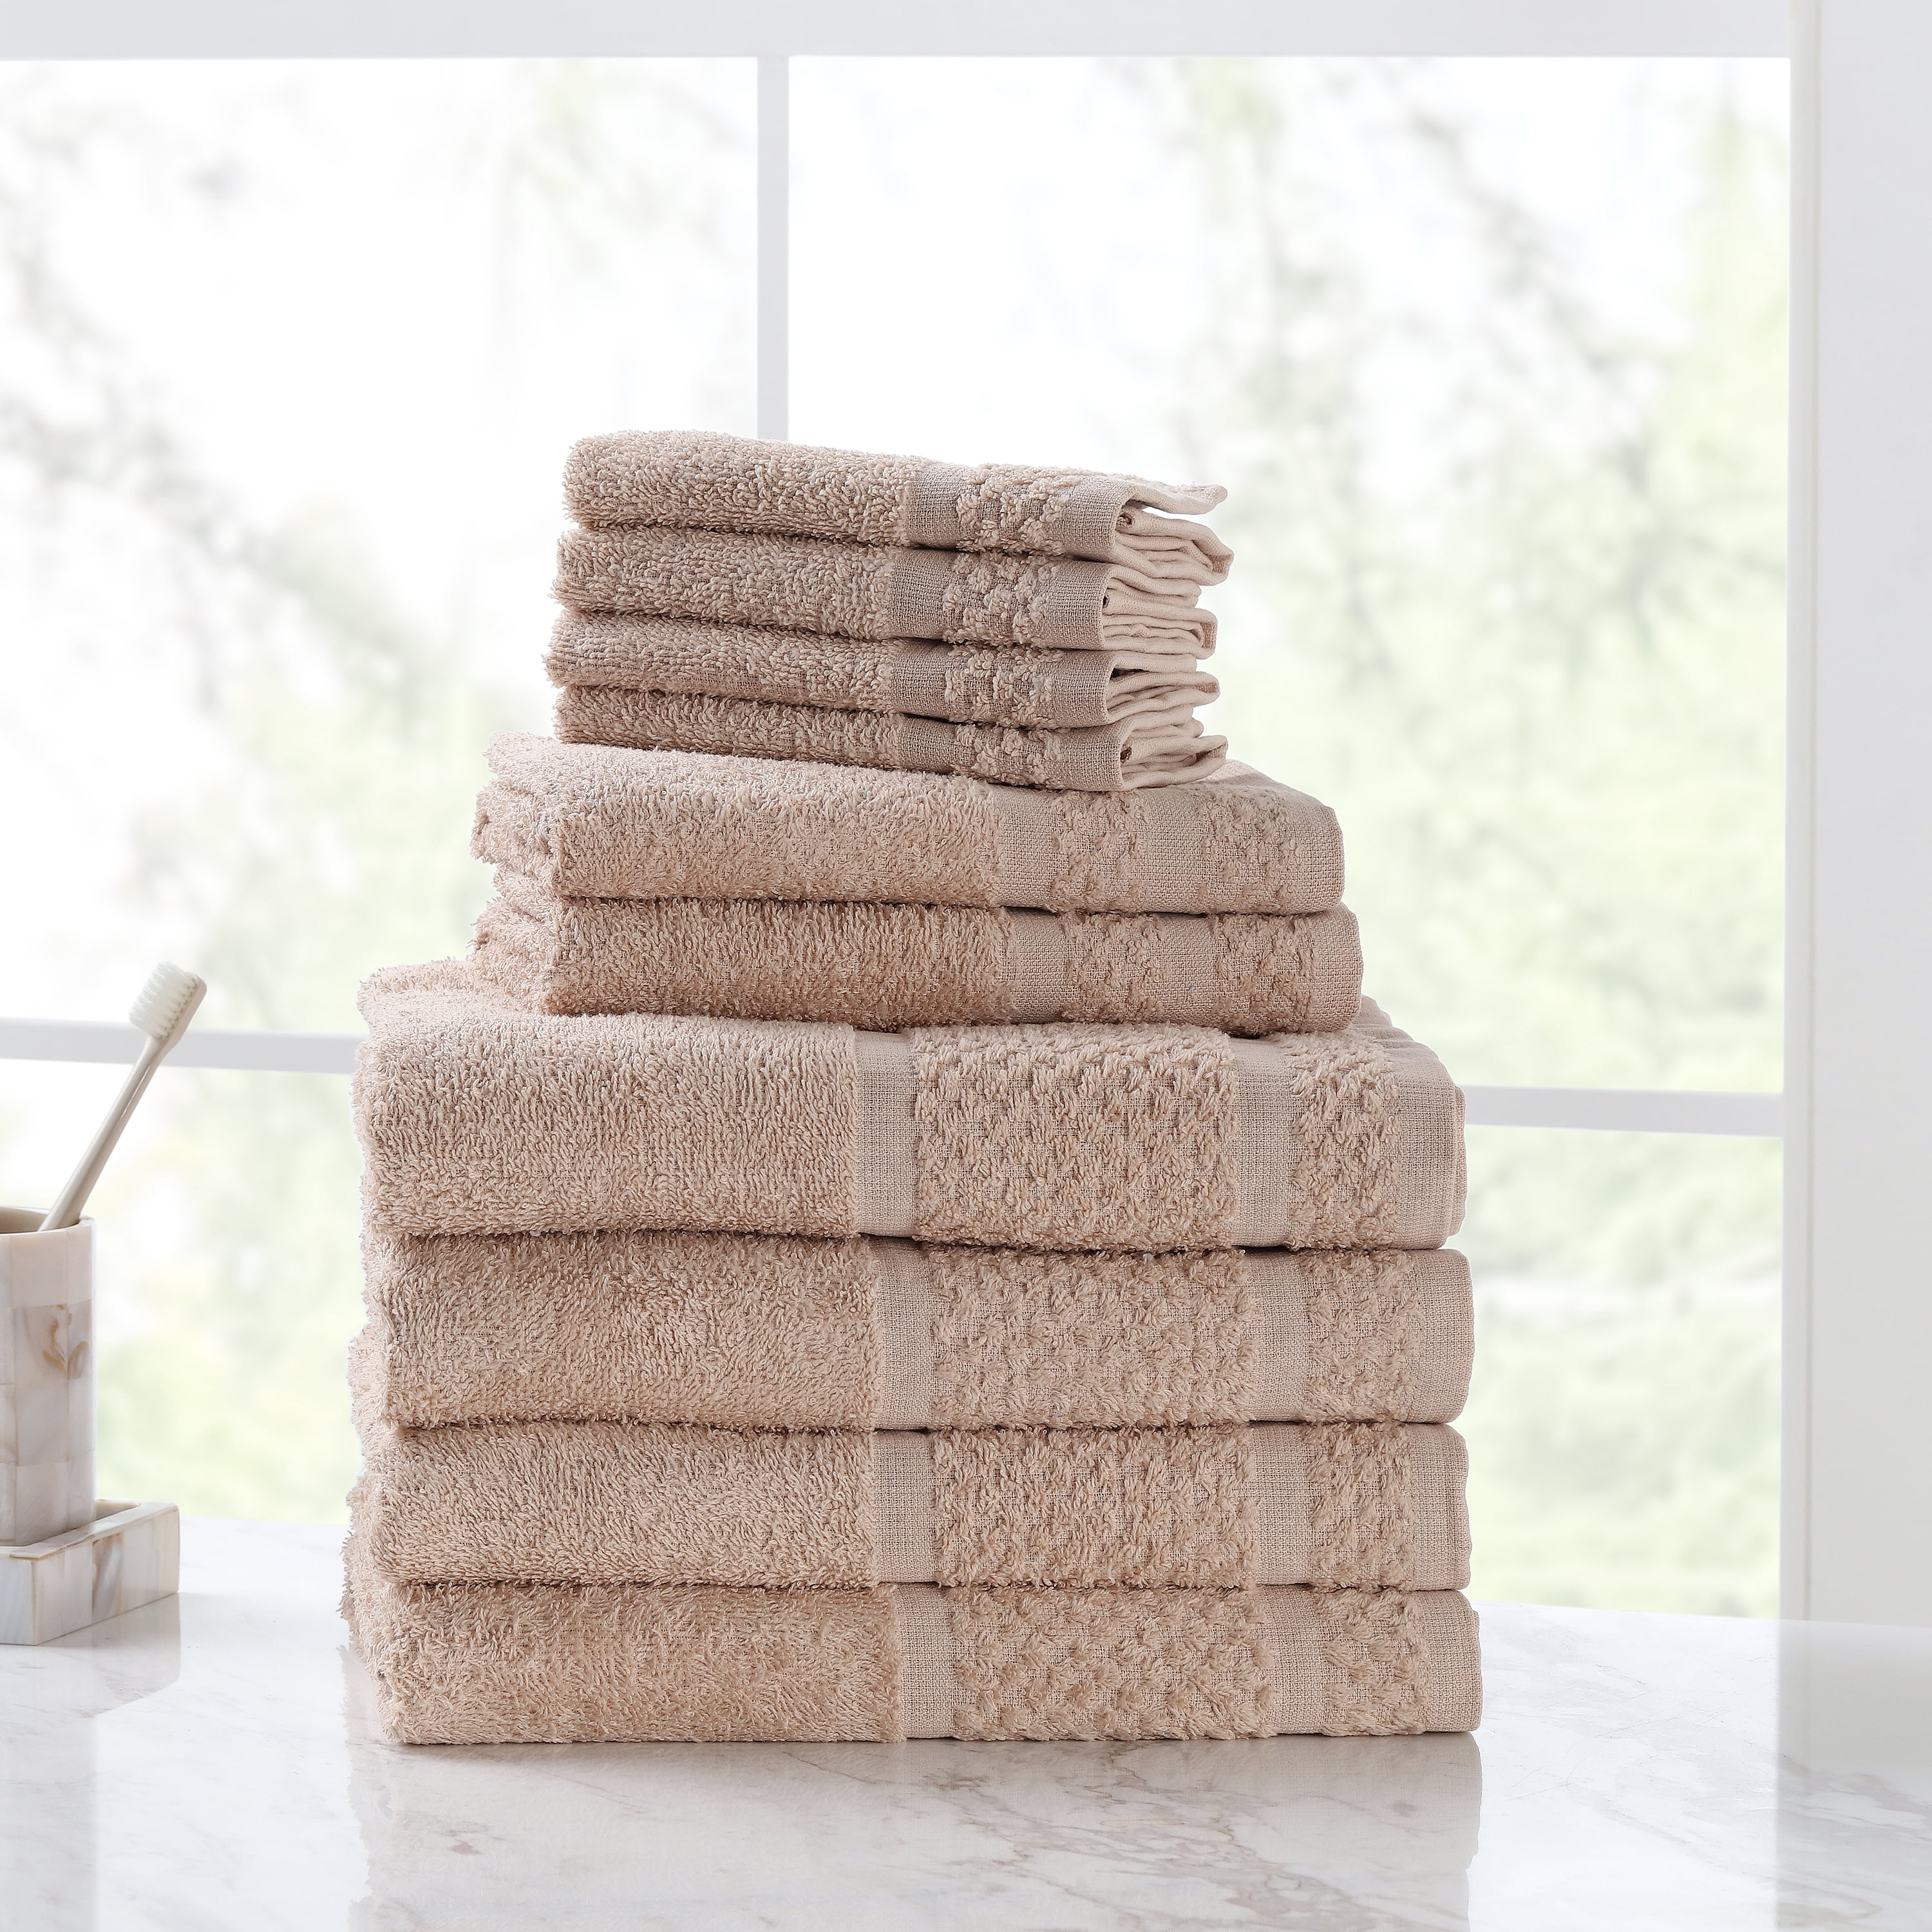 Mainstays 10 Piece Bath Towel Set with Upgraded Softness & Durability, Vallejo Tan